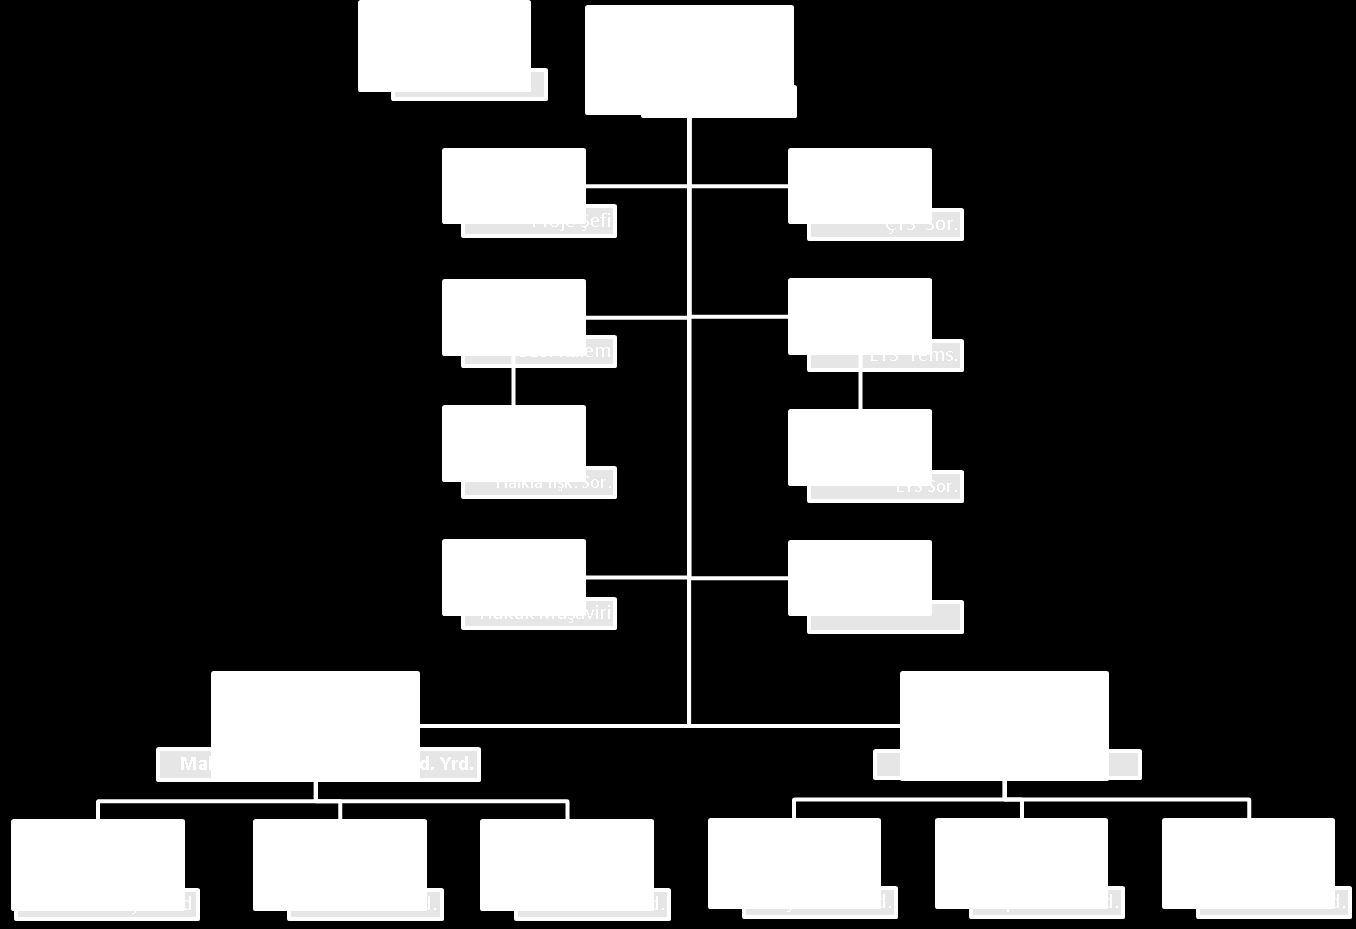 Organizasyon Yapısı (31.01.